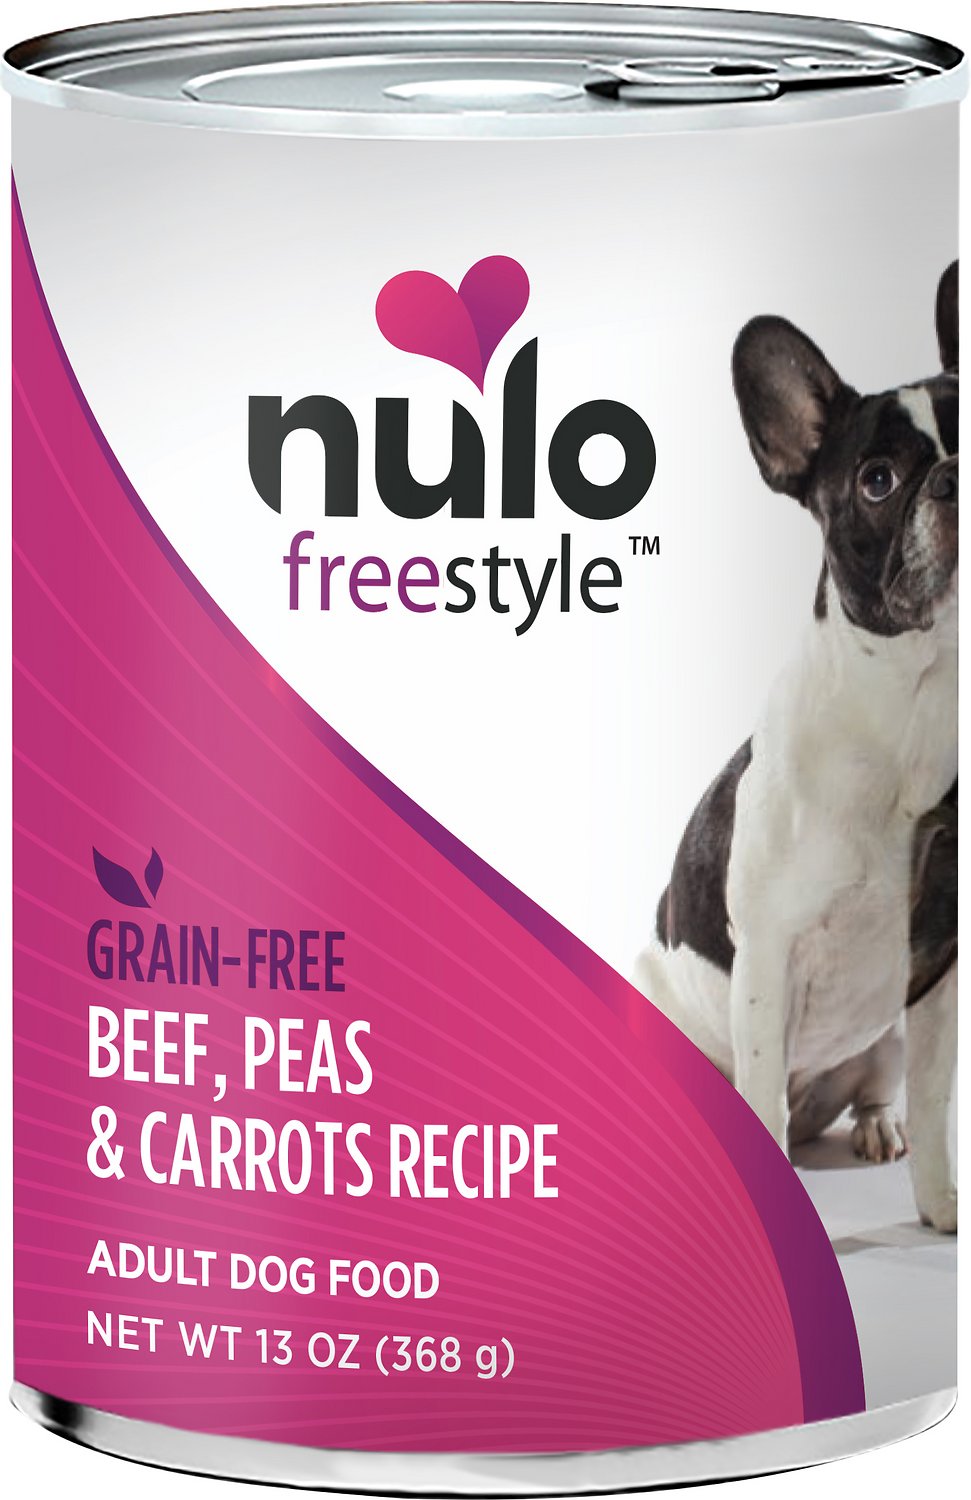 Nulo Grain-Free Beef, Peas, & Carrots Recipe